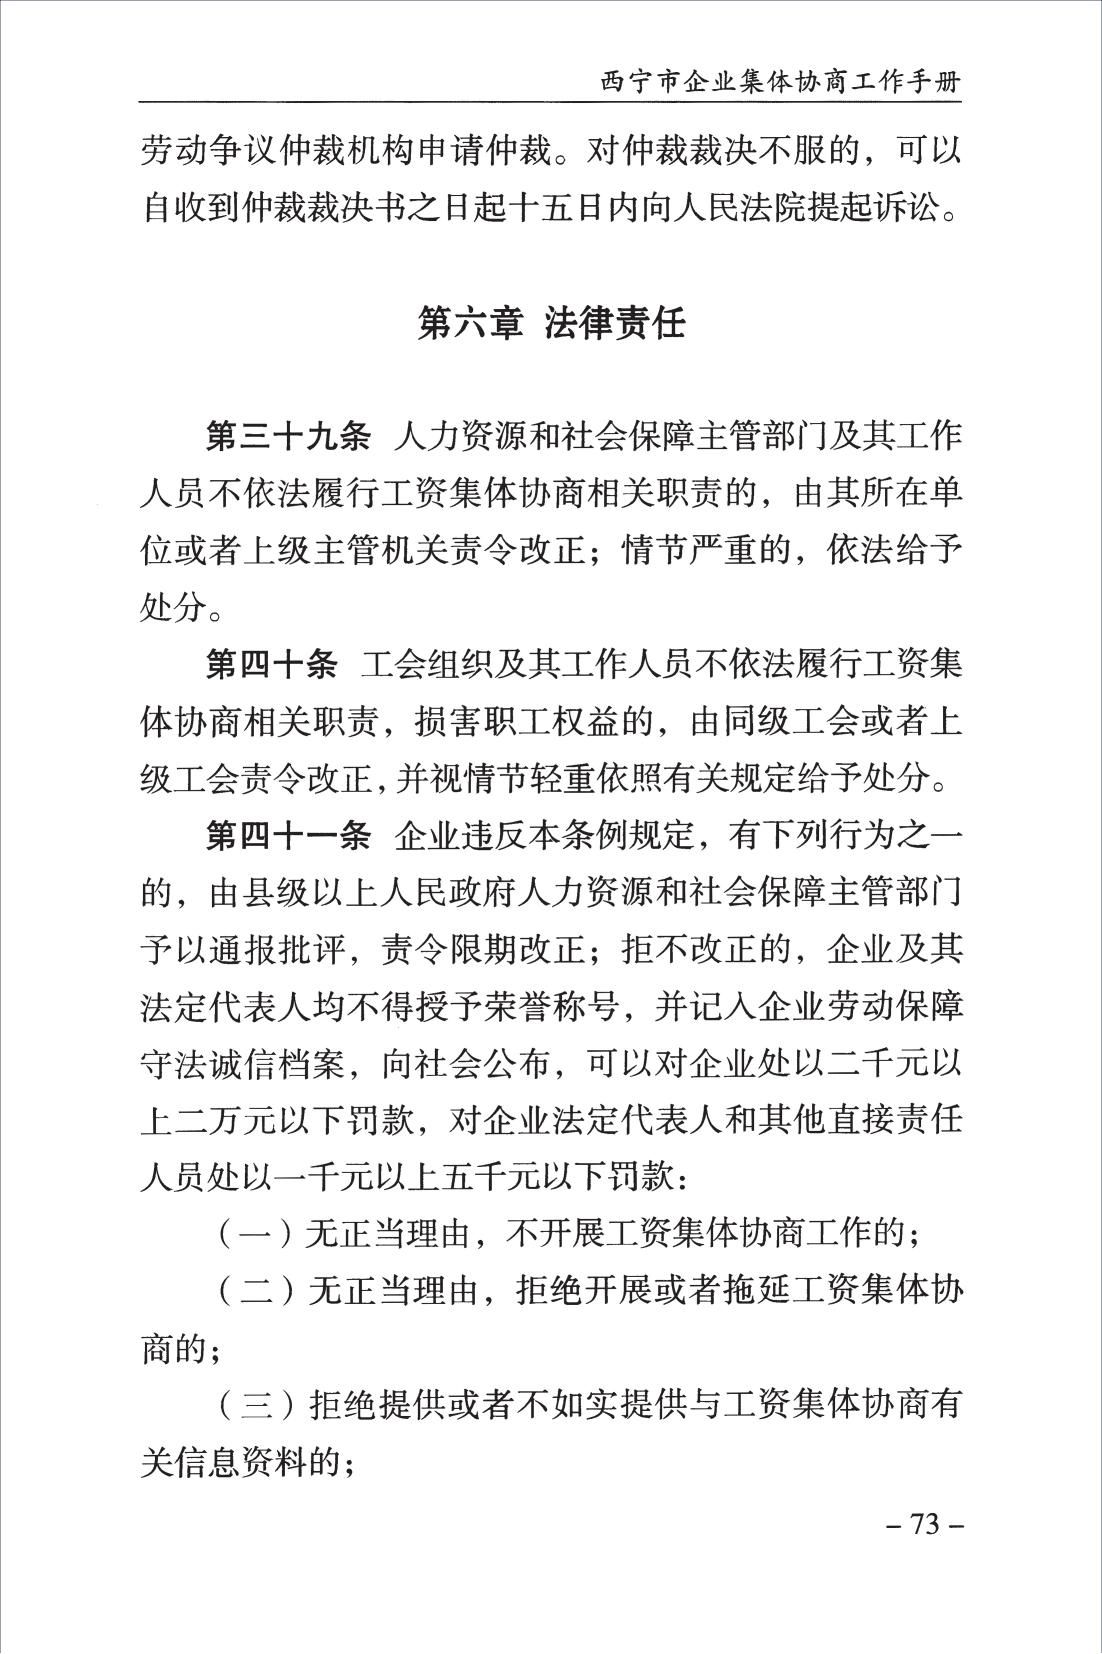 西宁市企业集体协商工作手册_75.jpg